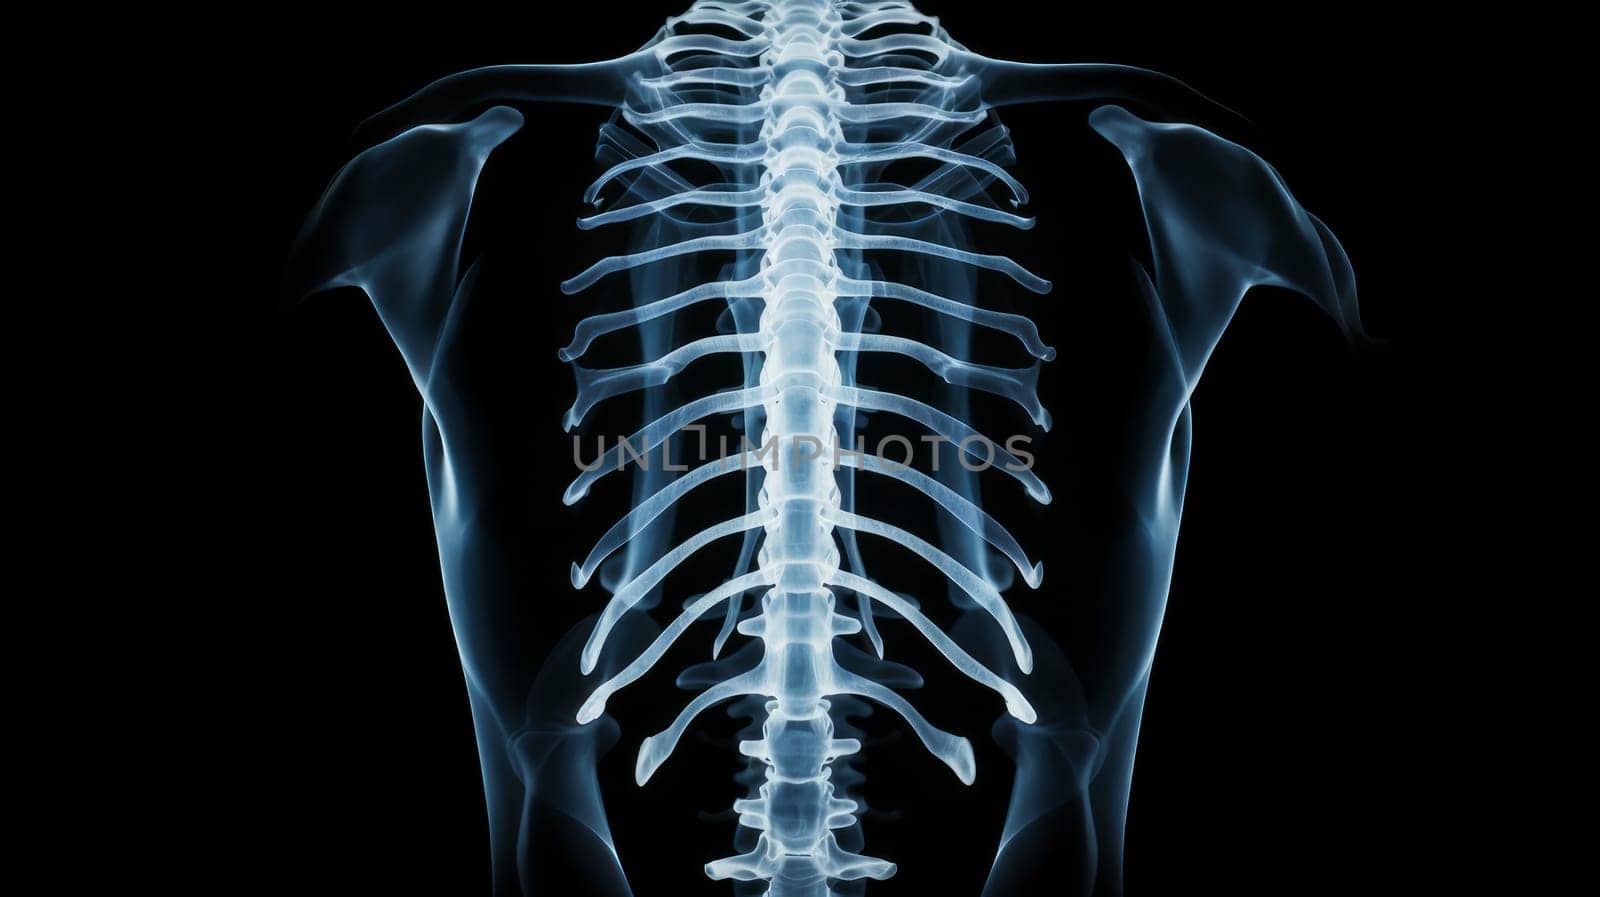 Human skeleton on X-ray, human bones. by Alla_Yurtayeva